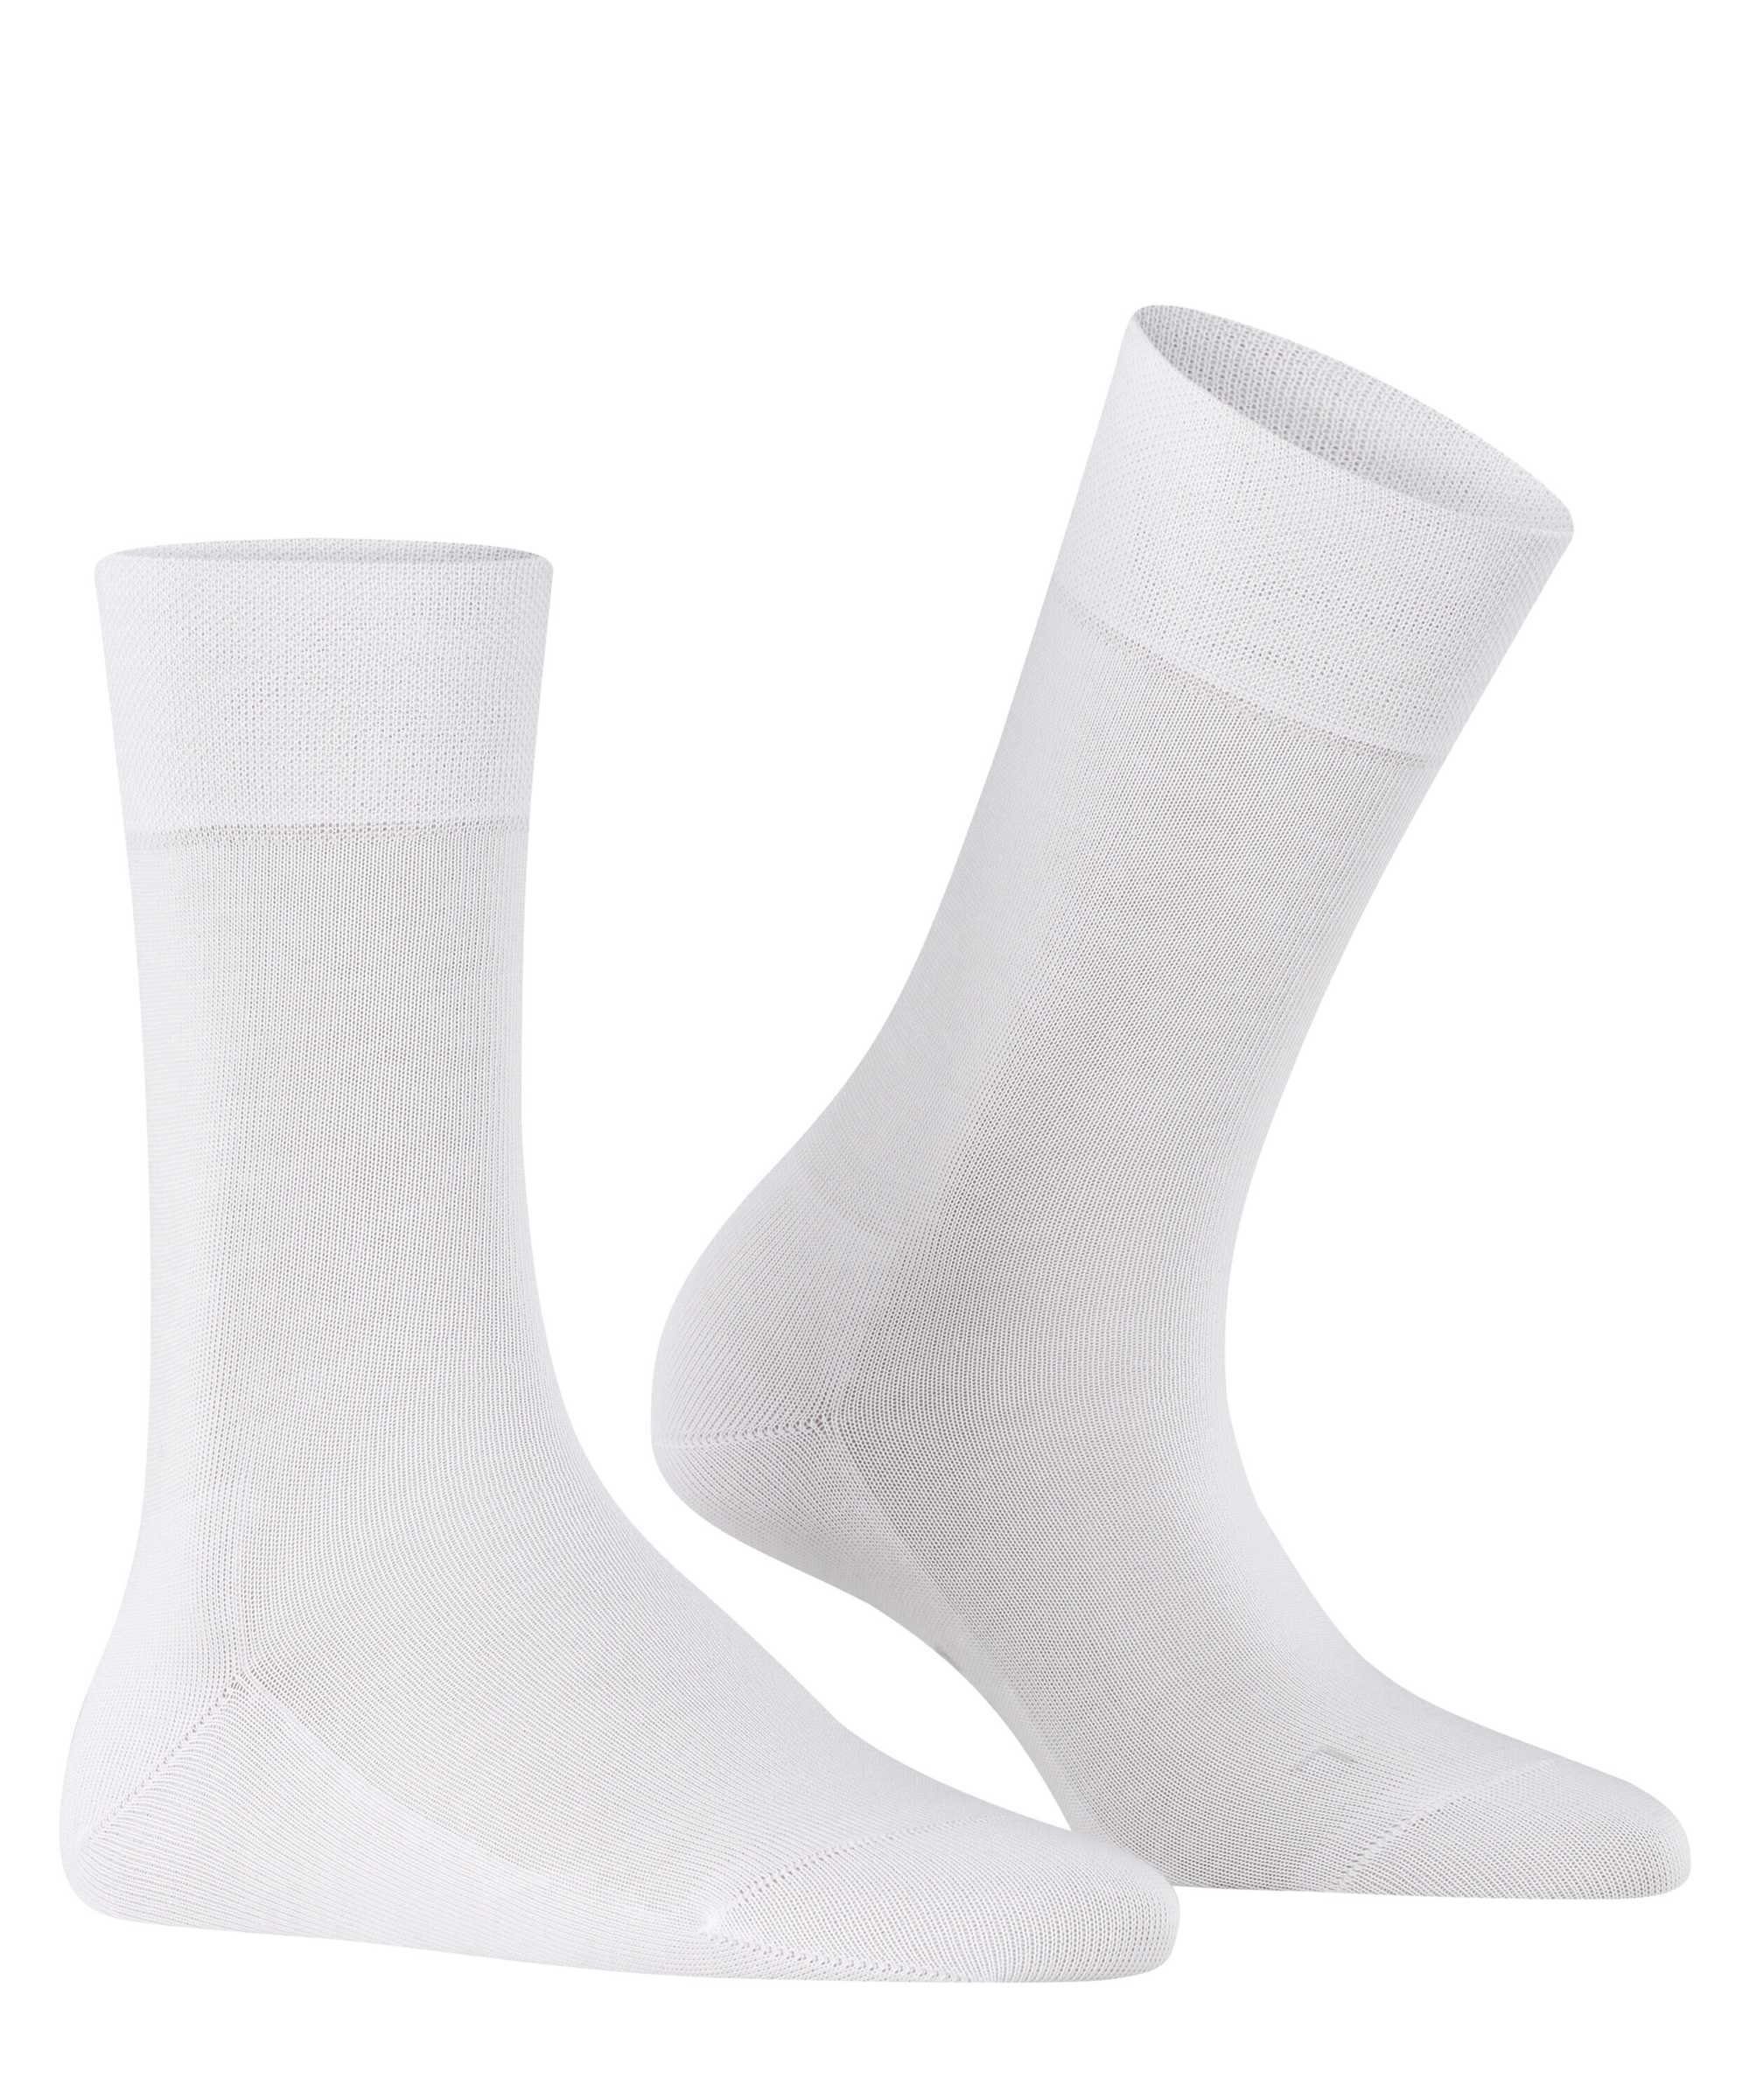 FALKE Kurzsocken Damen Bündchen, Socken York, New Sensitive Logo Weiß 